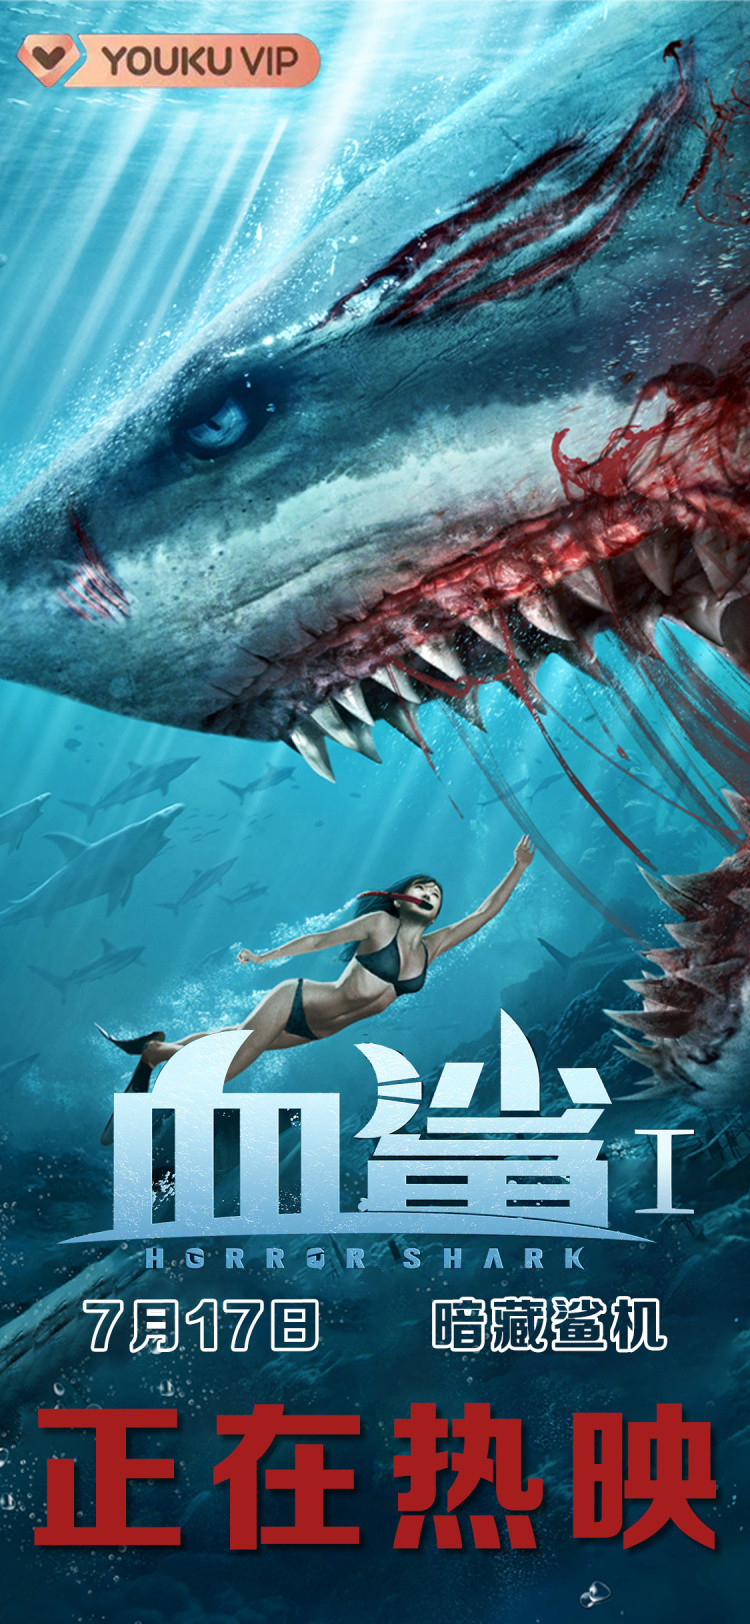 《血鲨》燃炸大荧幕，高燃背后看北京爱优腾娱乐如何玩转电影营销